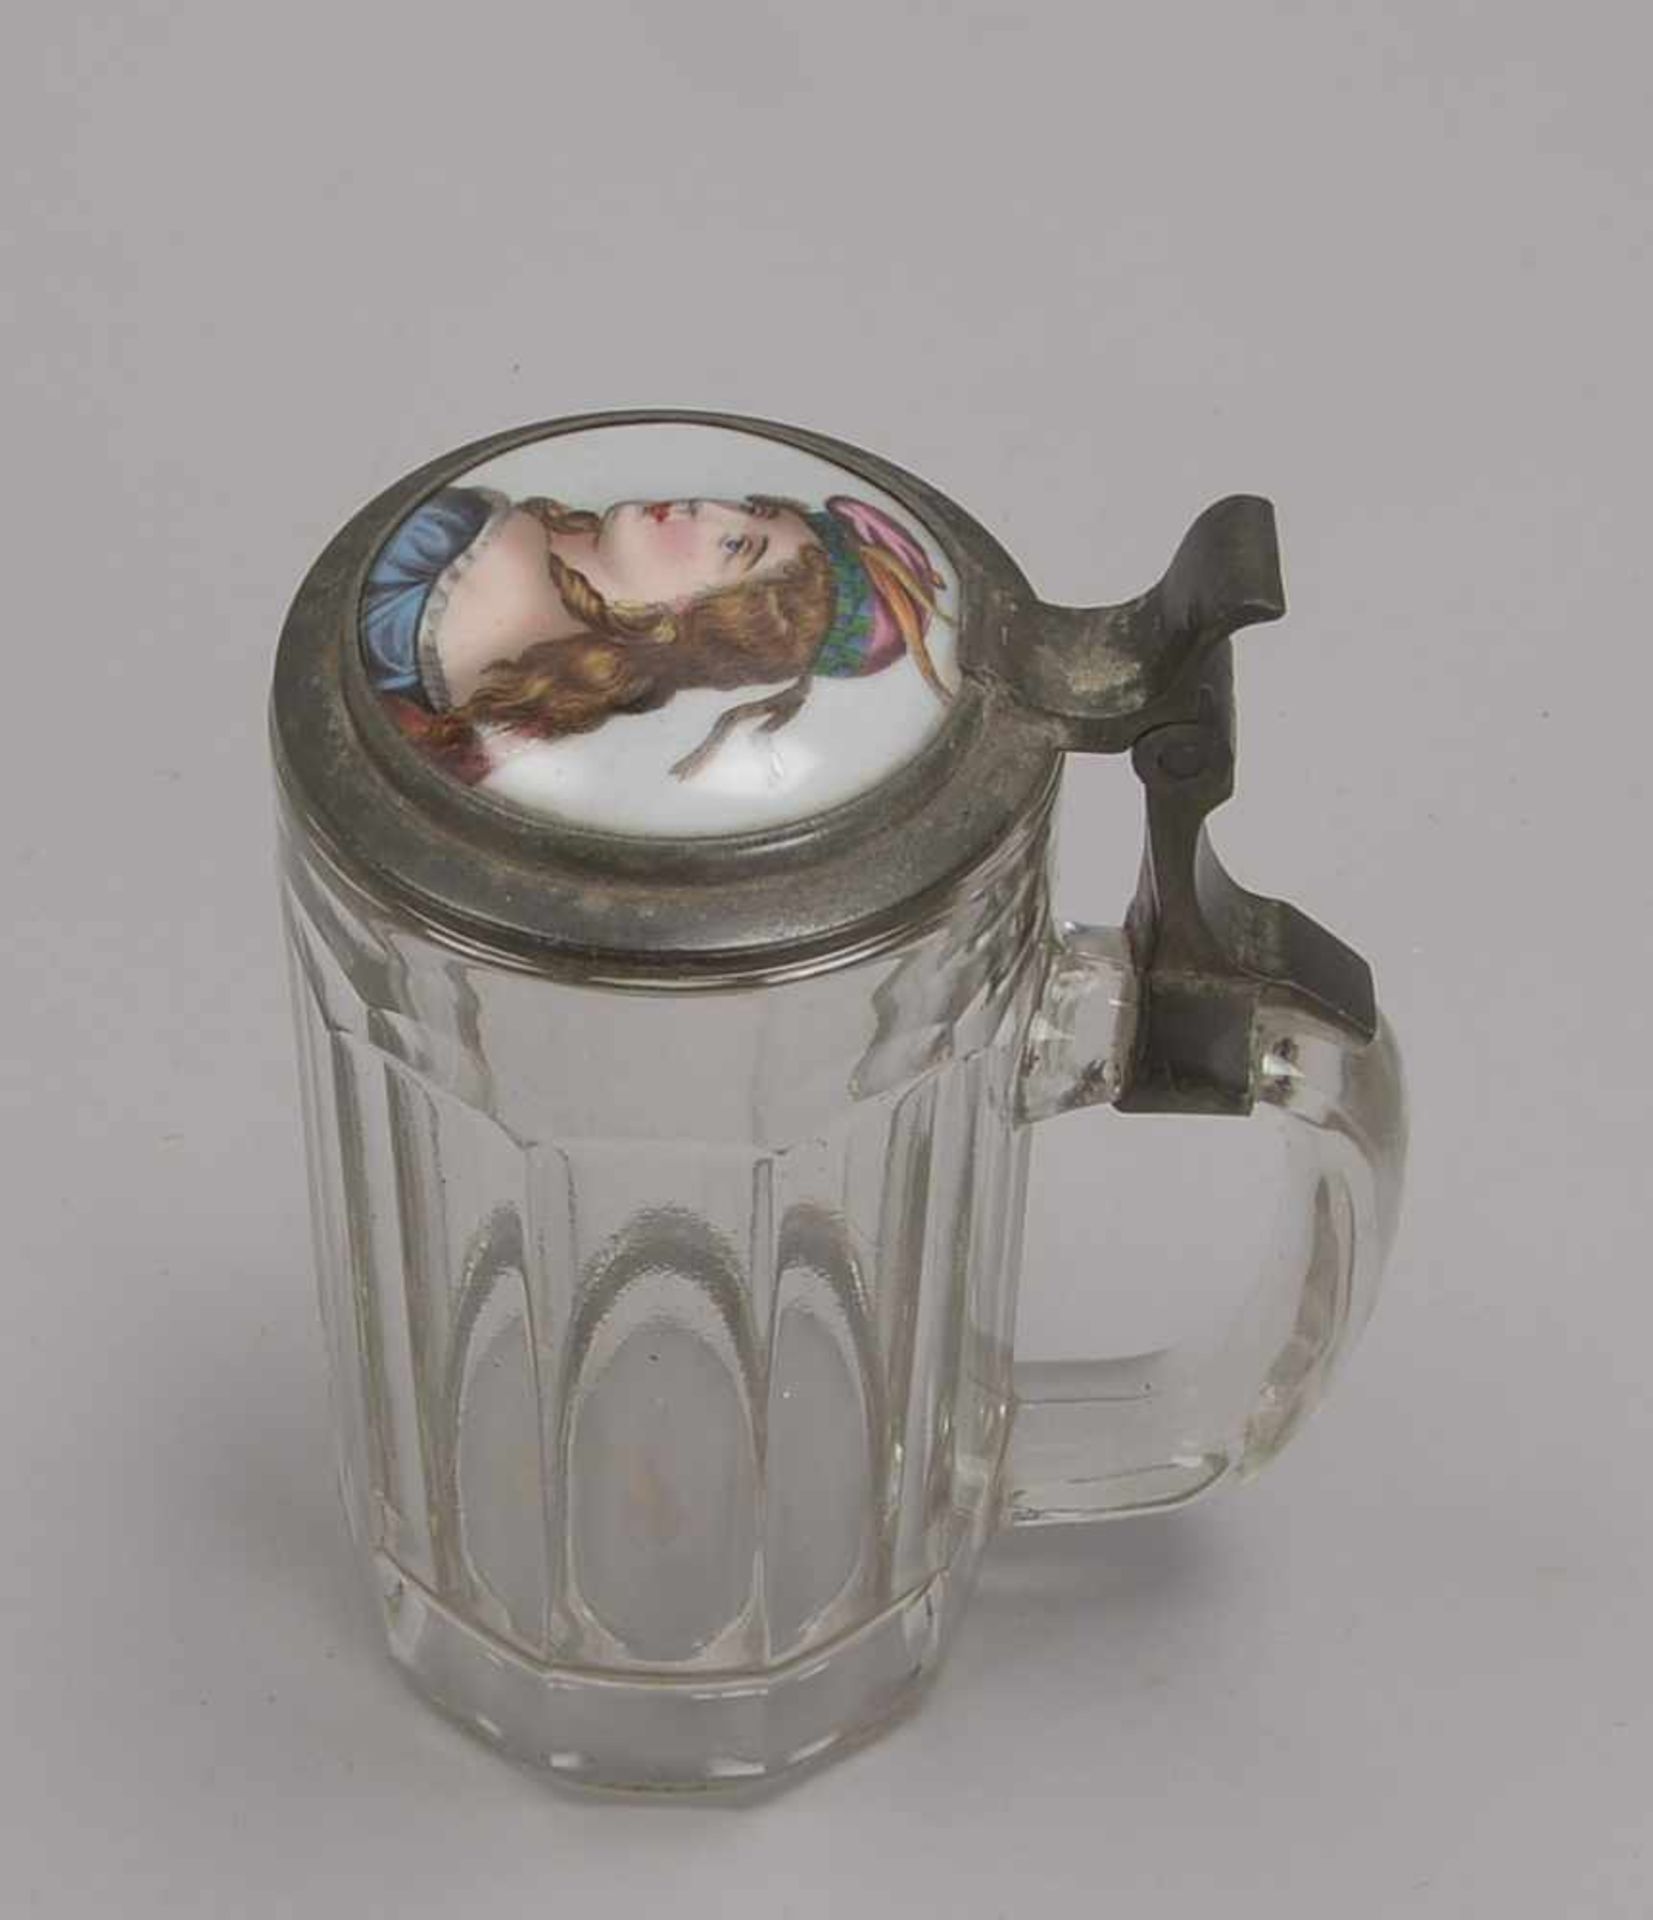 Bierkrug, Glas, mit Zinn-Deckel/mit eingelassener Porzellanmalerei ('Frauenbildnis'); Höhe 18,5